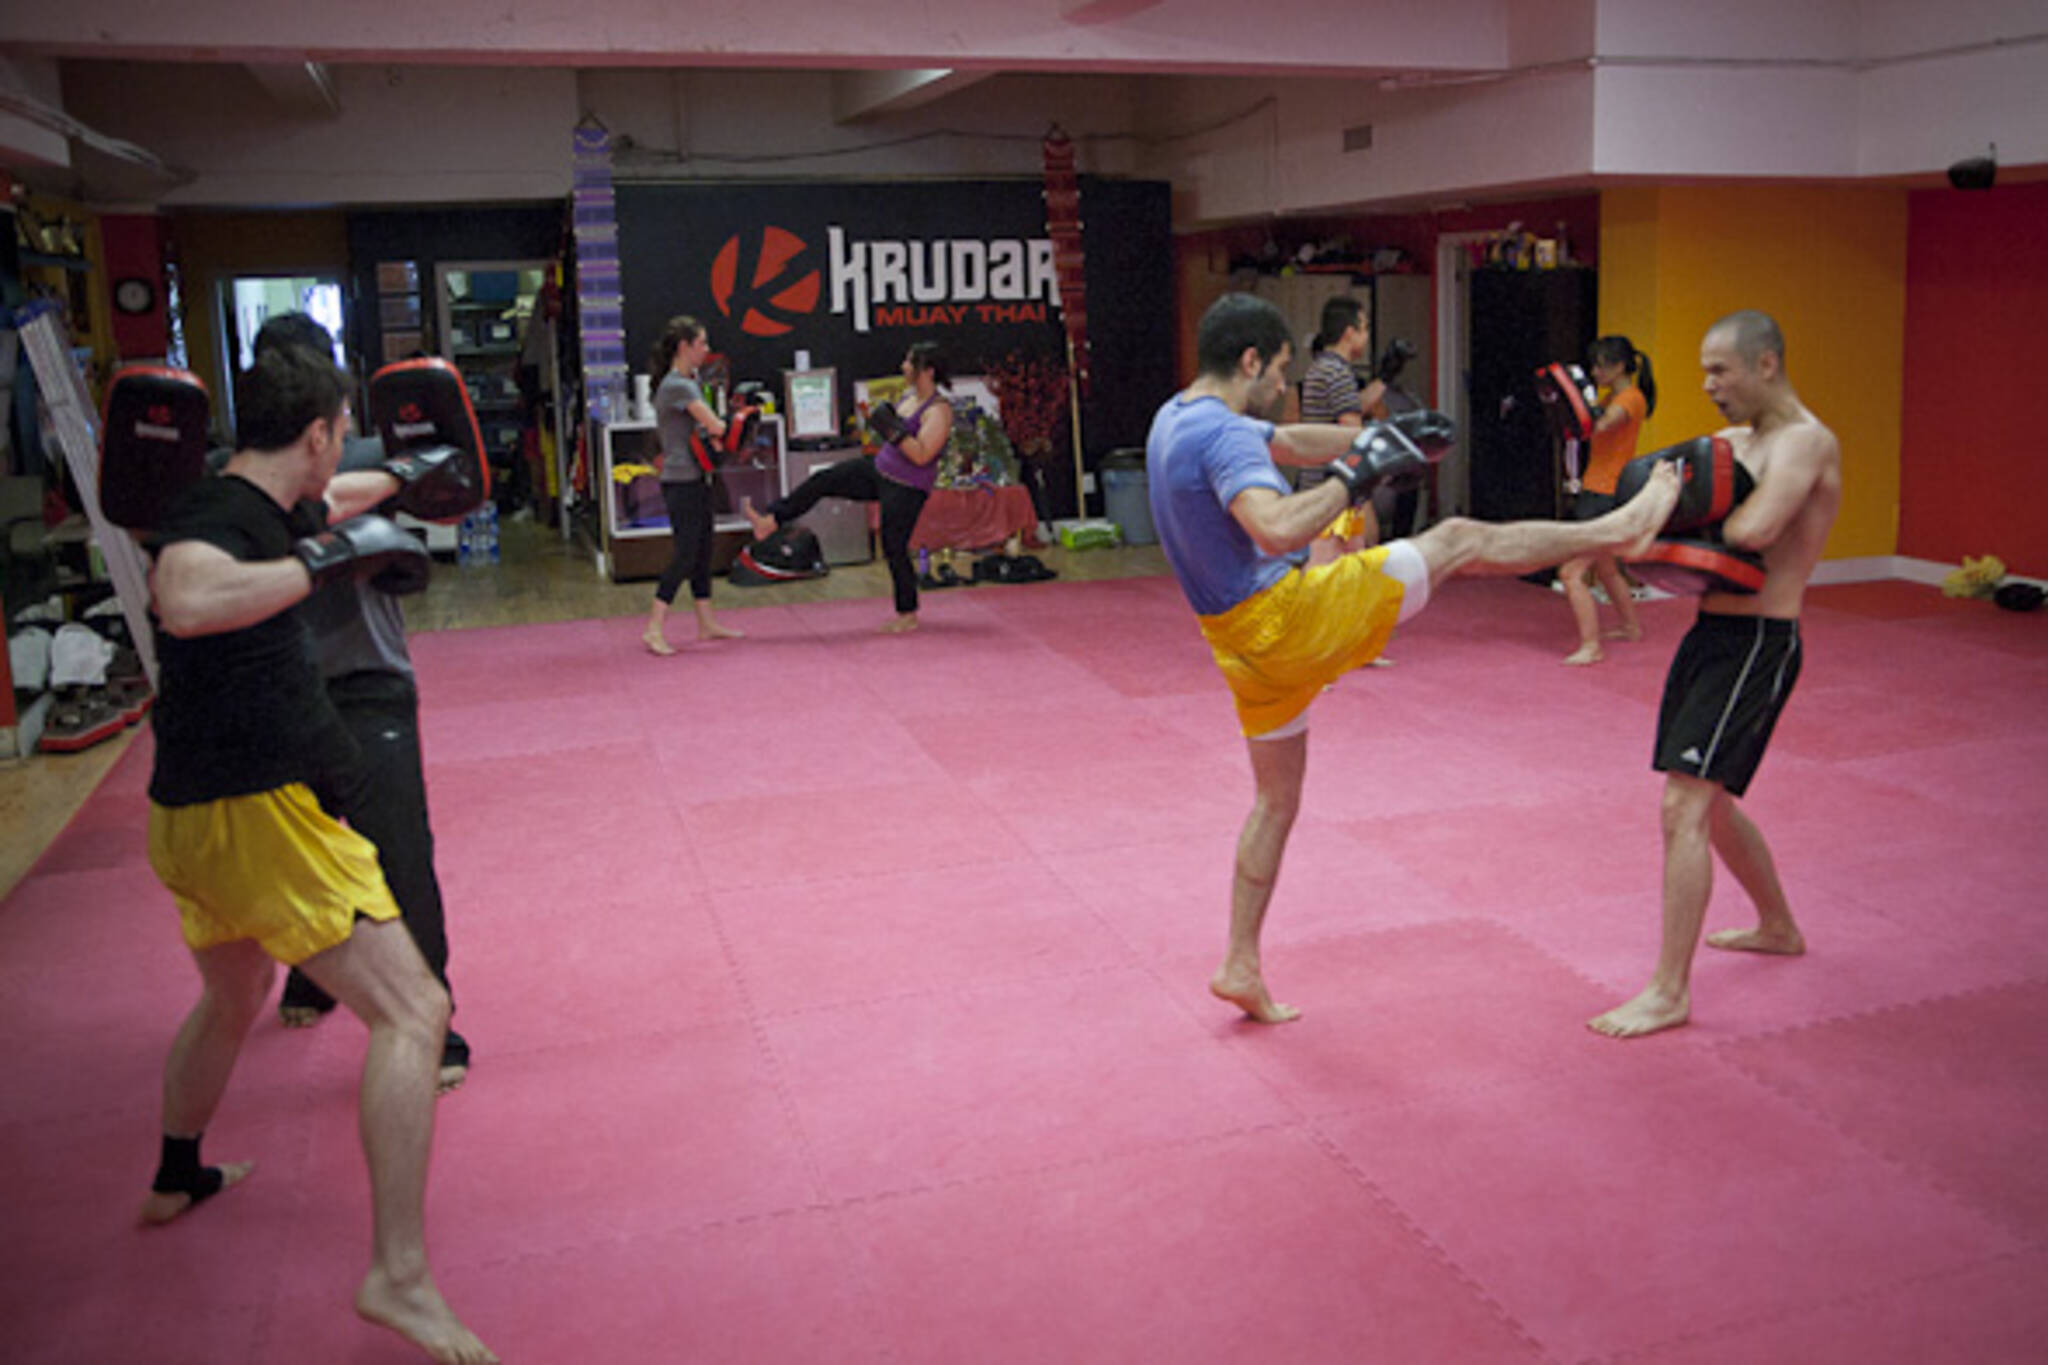 Krudar Muay Thai